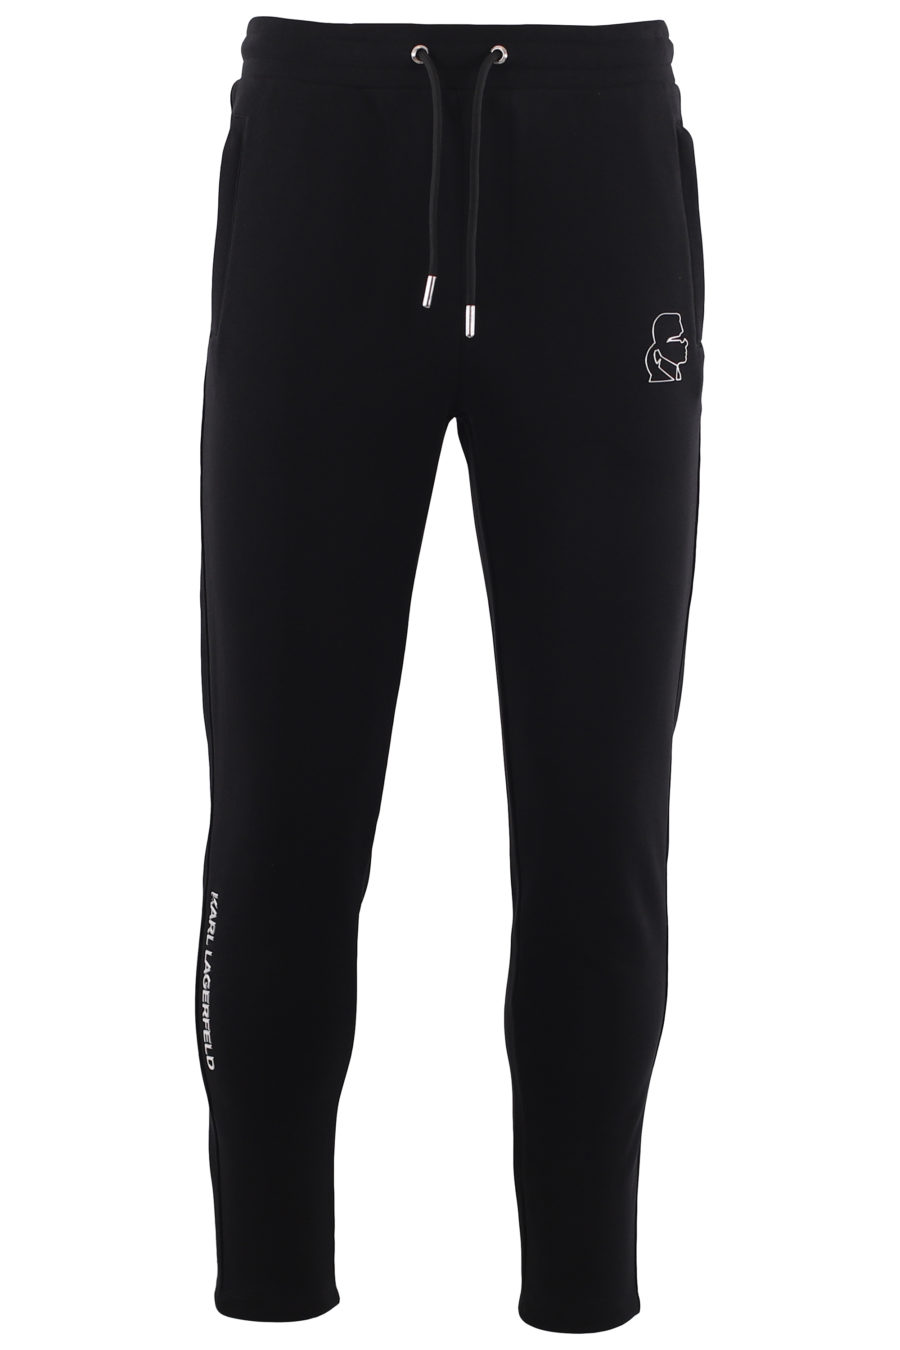 Pantalón chándal negro con logo plateado - IMG 6650